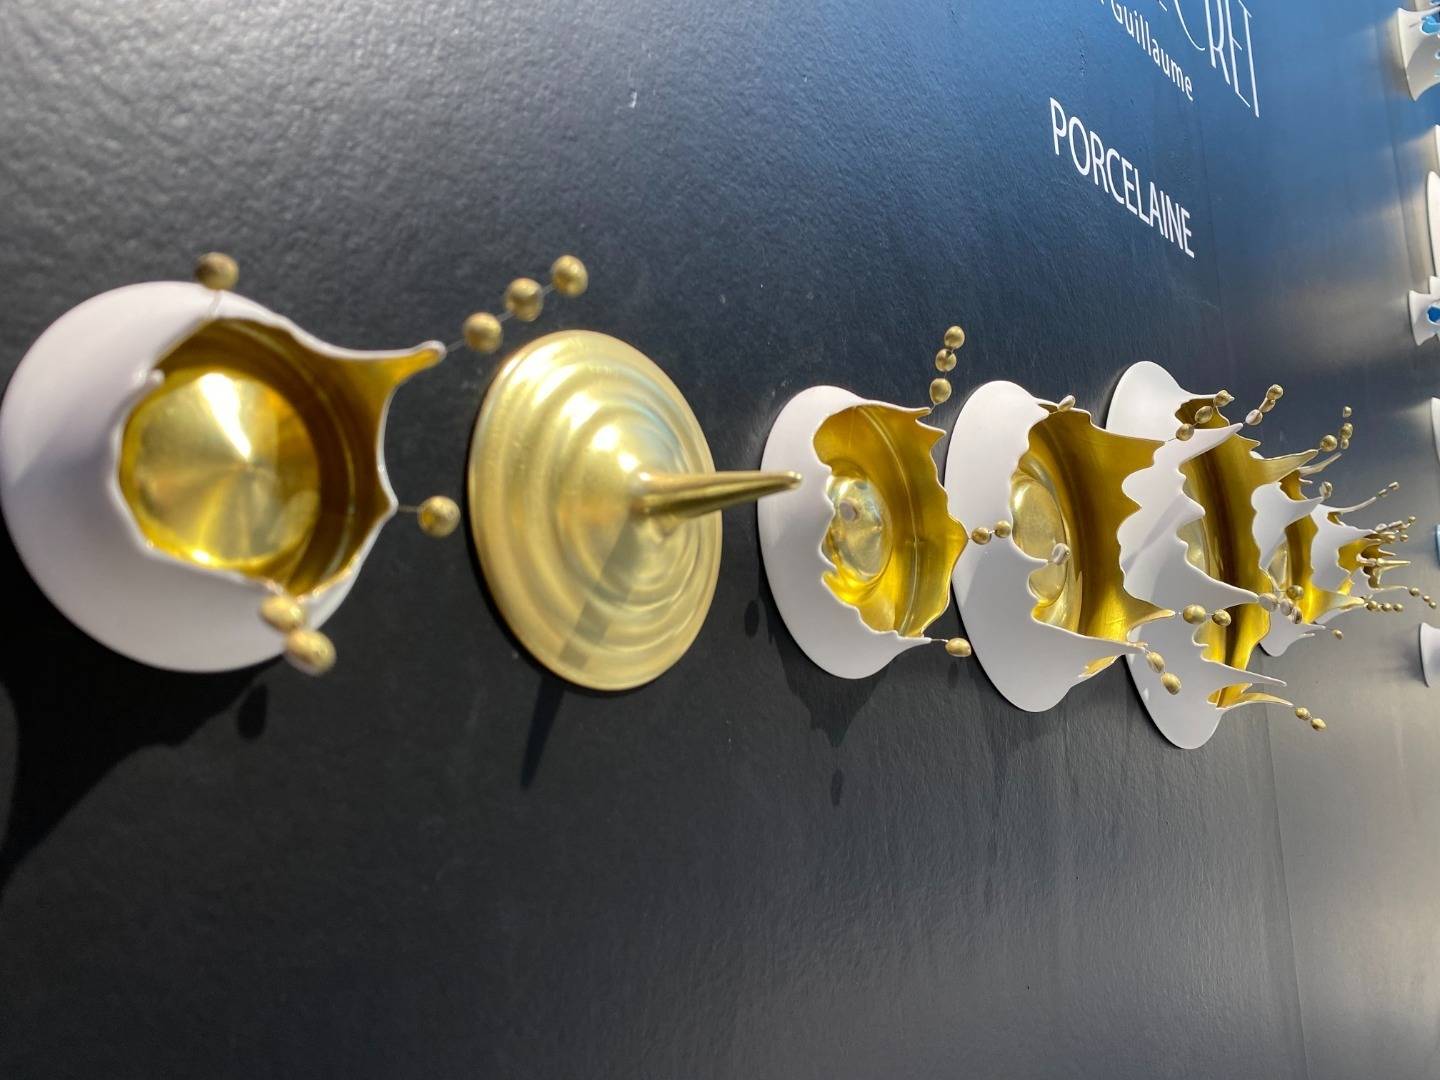 Passage secret - gold punctum wall sculpture